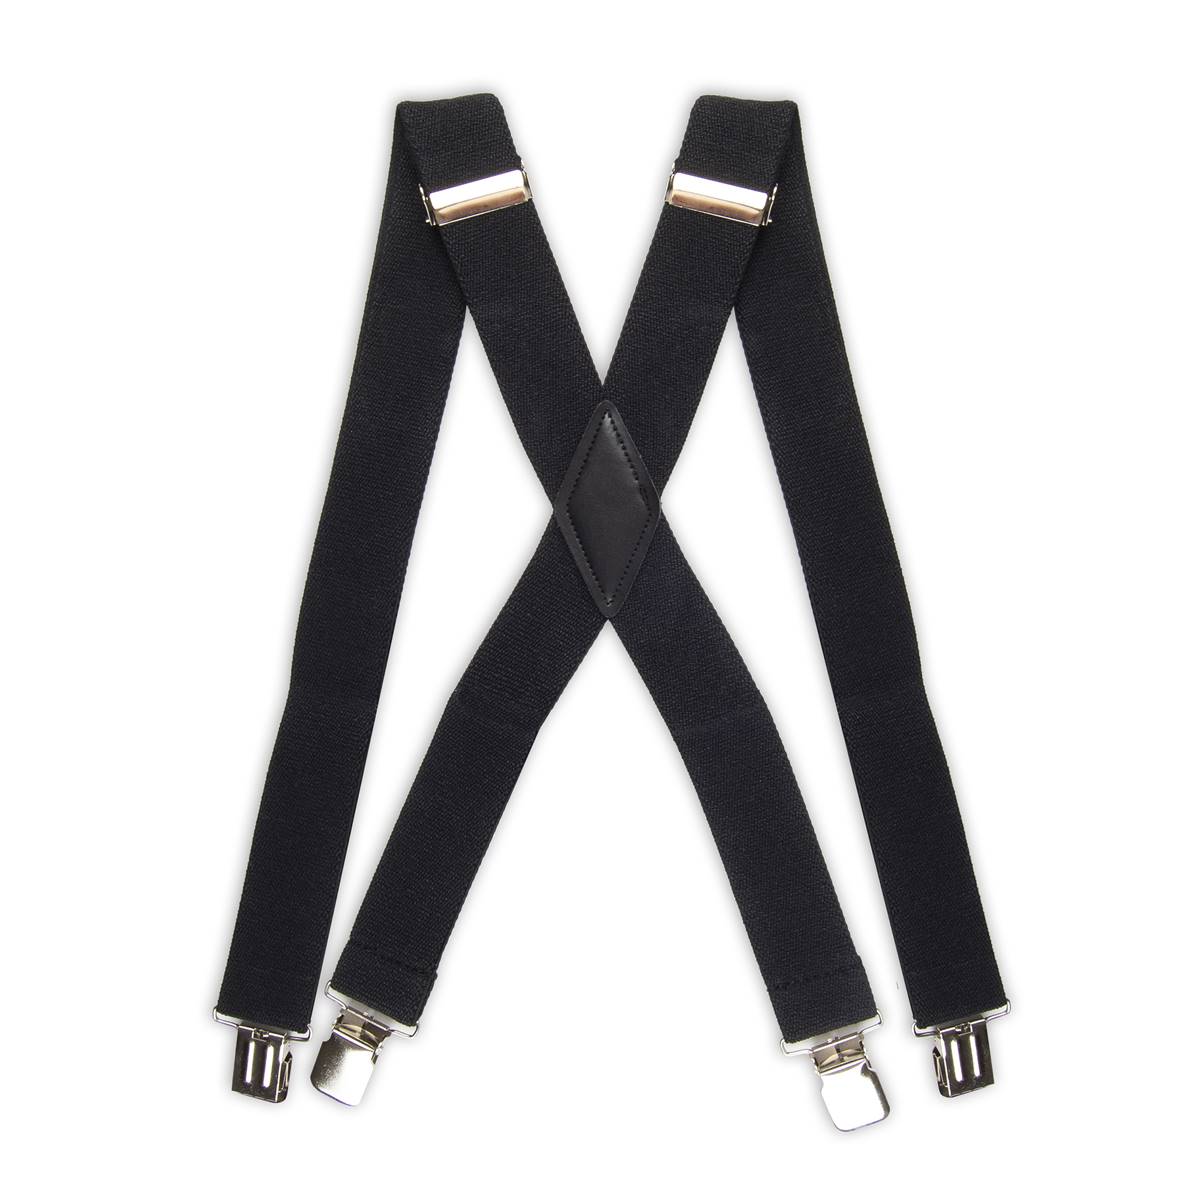 Mens Dockers(R) Adjustable Suspenders